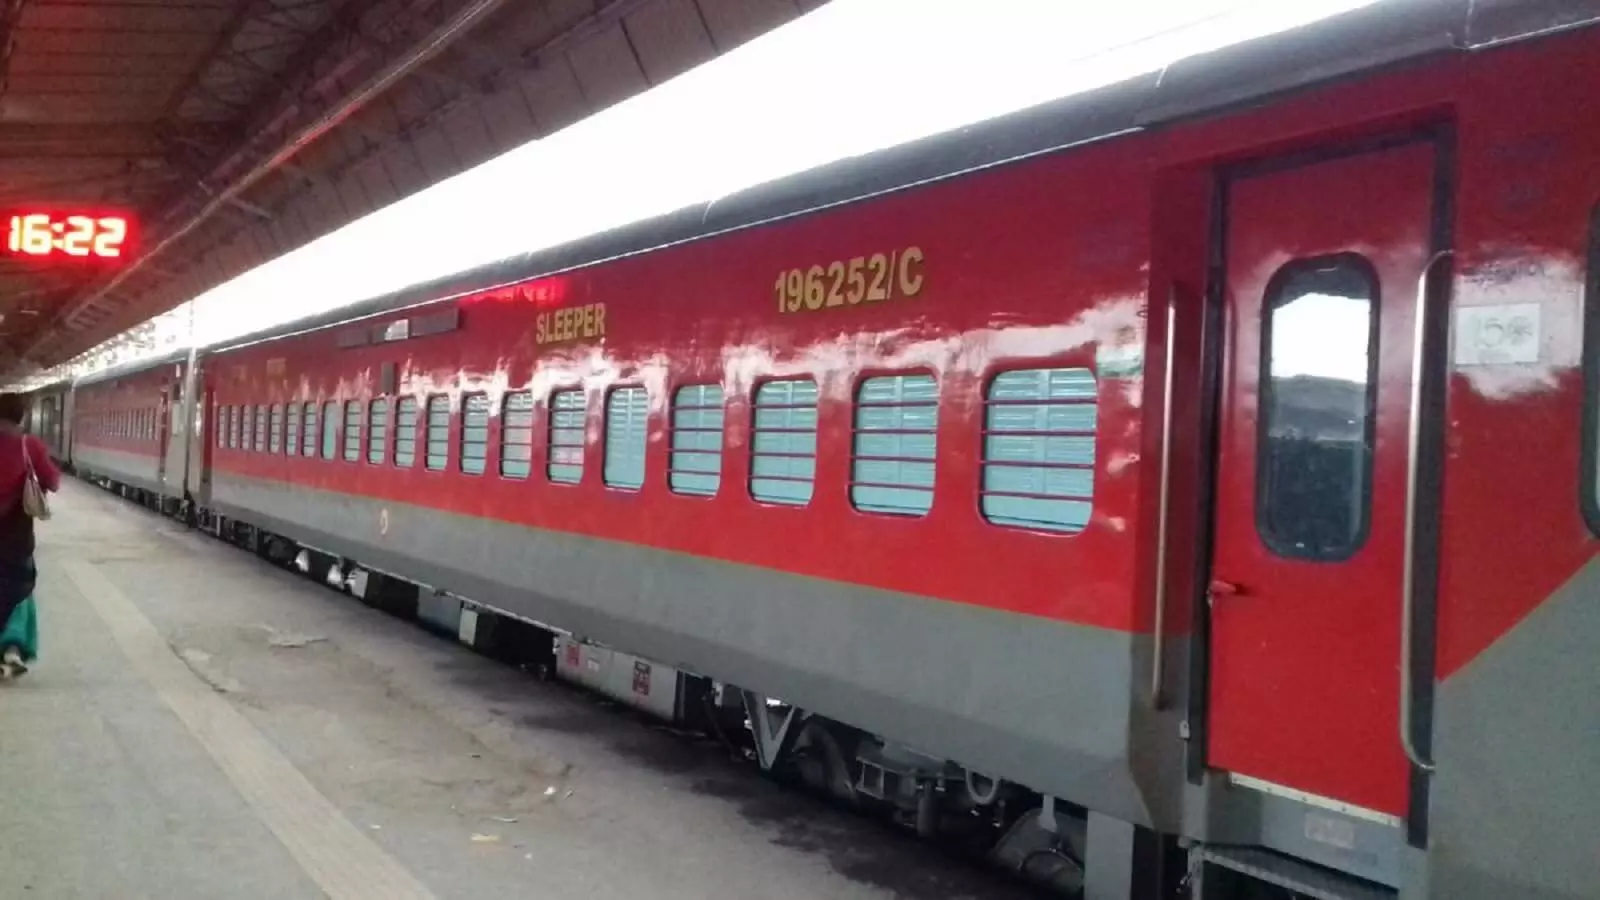 बेंगलुरु-दानापुर के बीच चलेगी स्पेशल एक्सप्रेस ट्रेन, एमपी के जबलपुर, इटारसी, सतना के रेल यात्रियों को मिलेगा लाभ, दिया है हाल्ट